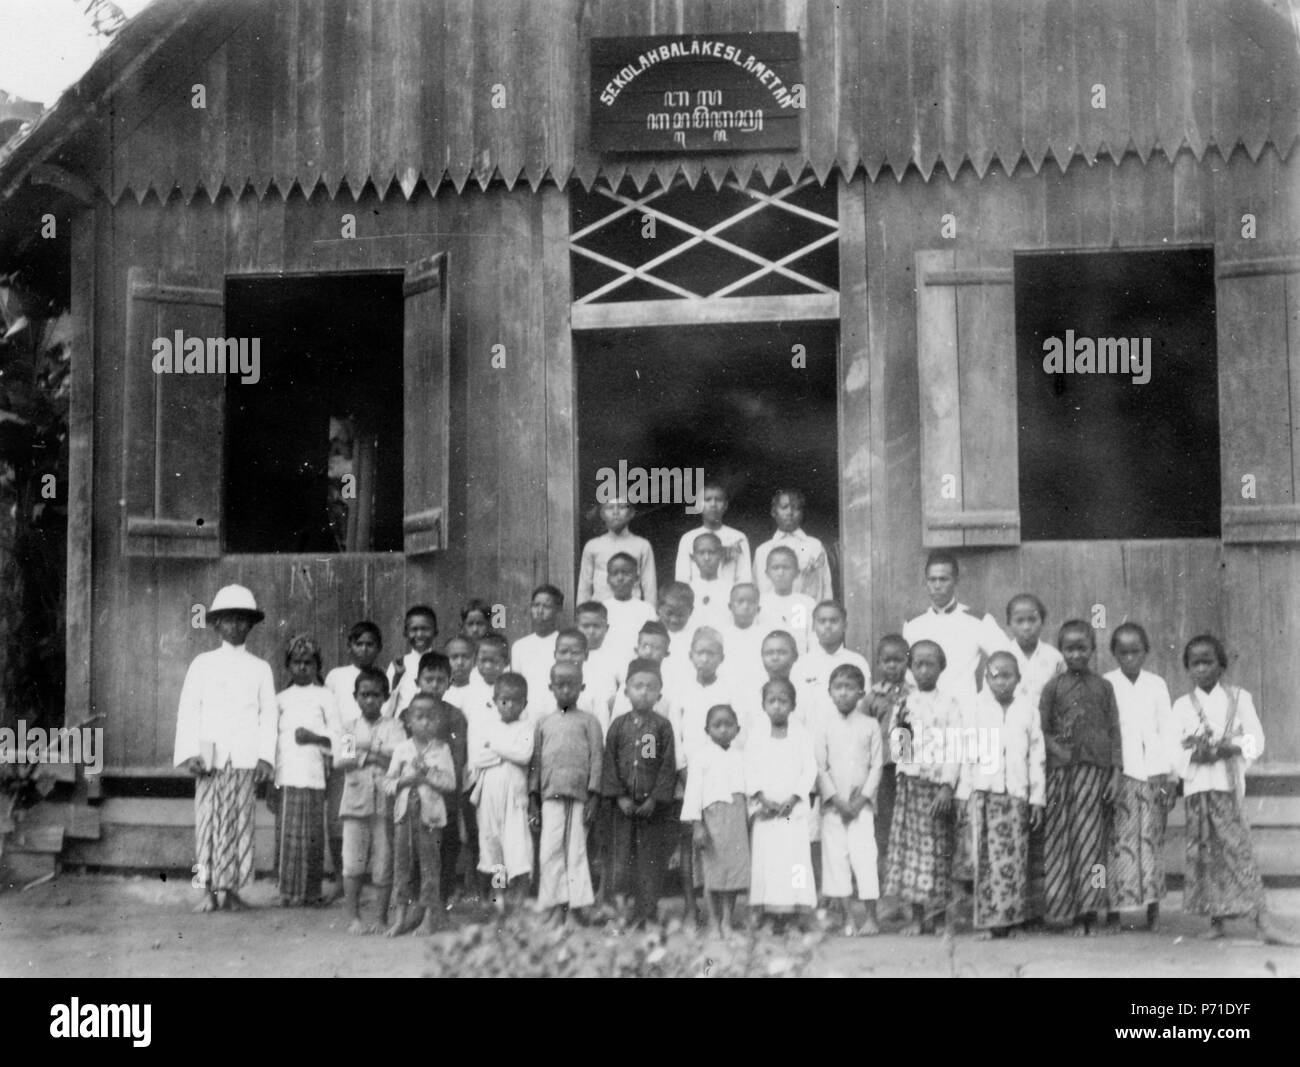 13 Frälsningsarméns skola och skolbarn. Sulawesi. Indonesien - SMVK - 010748b Stock Photo